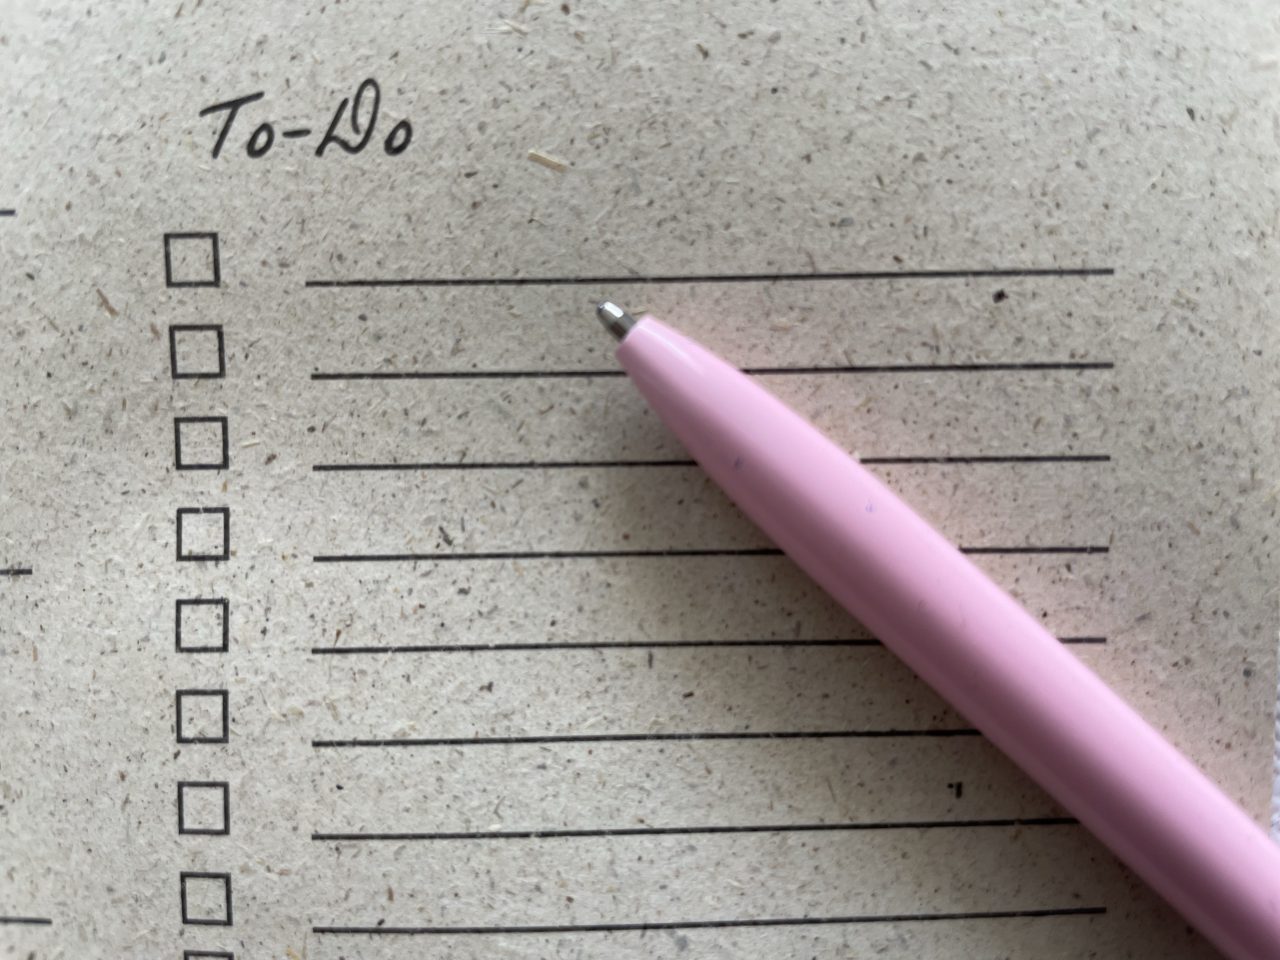 auf einem Zettel steht "To-do" darunter sind Linien und ein Stift liegt darauf